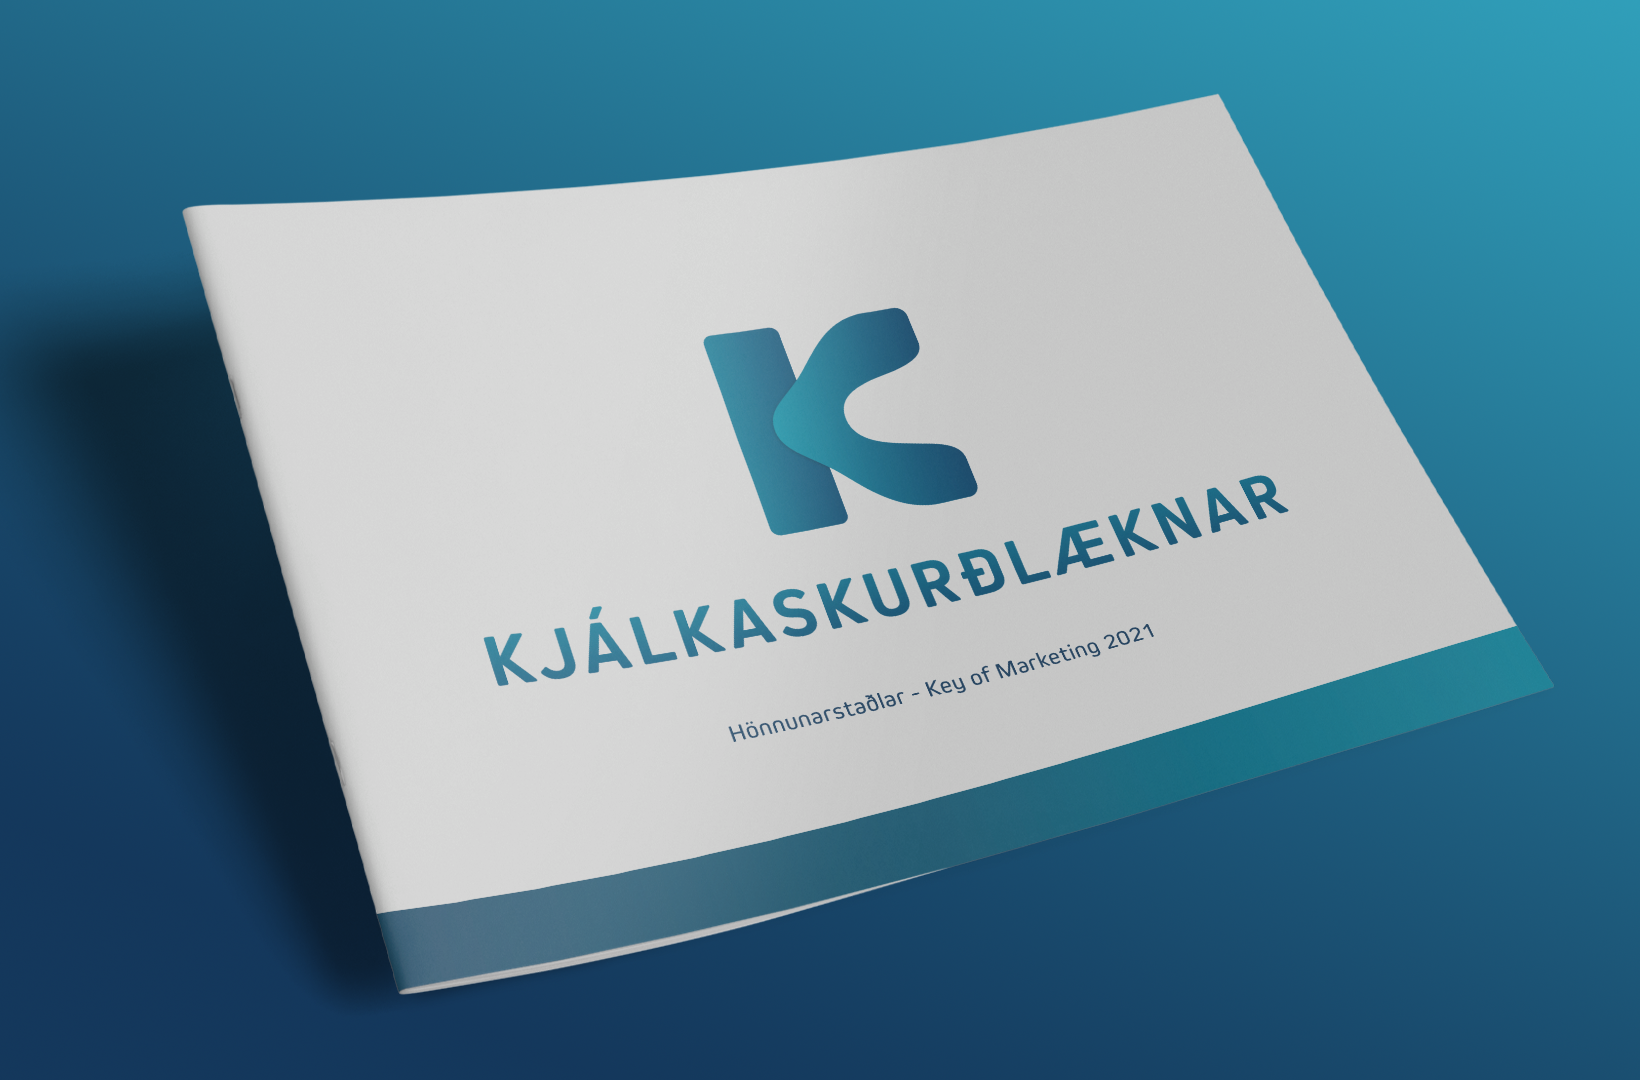 Hönnuðir Key of Marketing unnu logo fyrir Kjálkaskurðlækna, merkið endurspeglar þjónustu